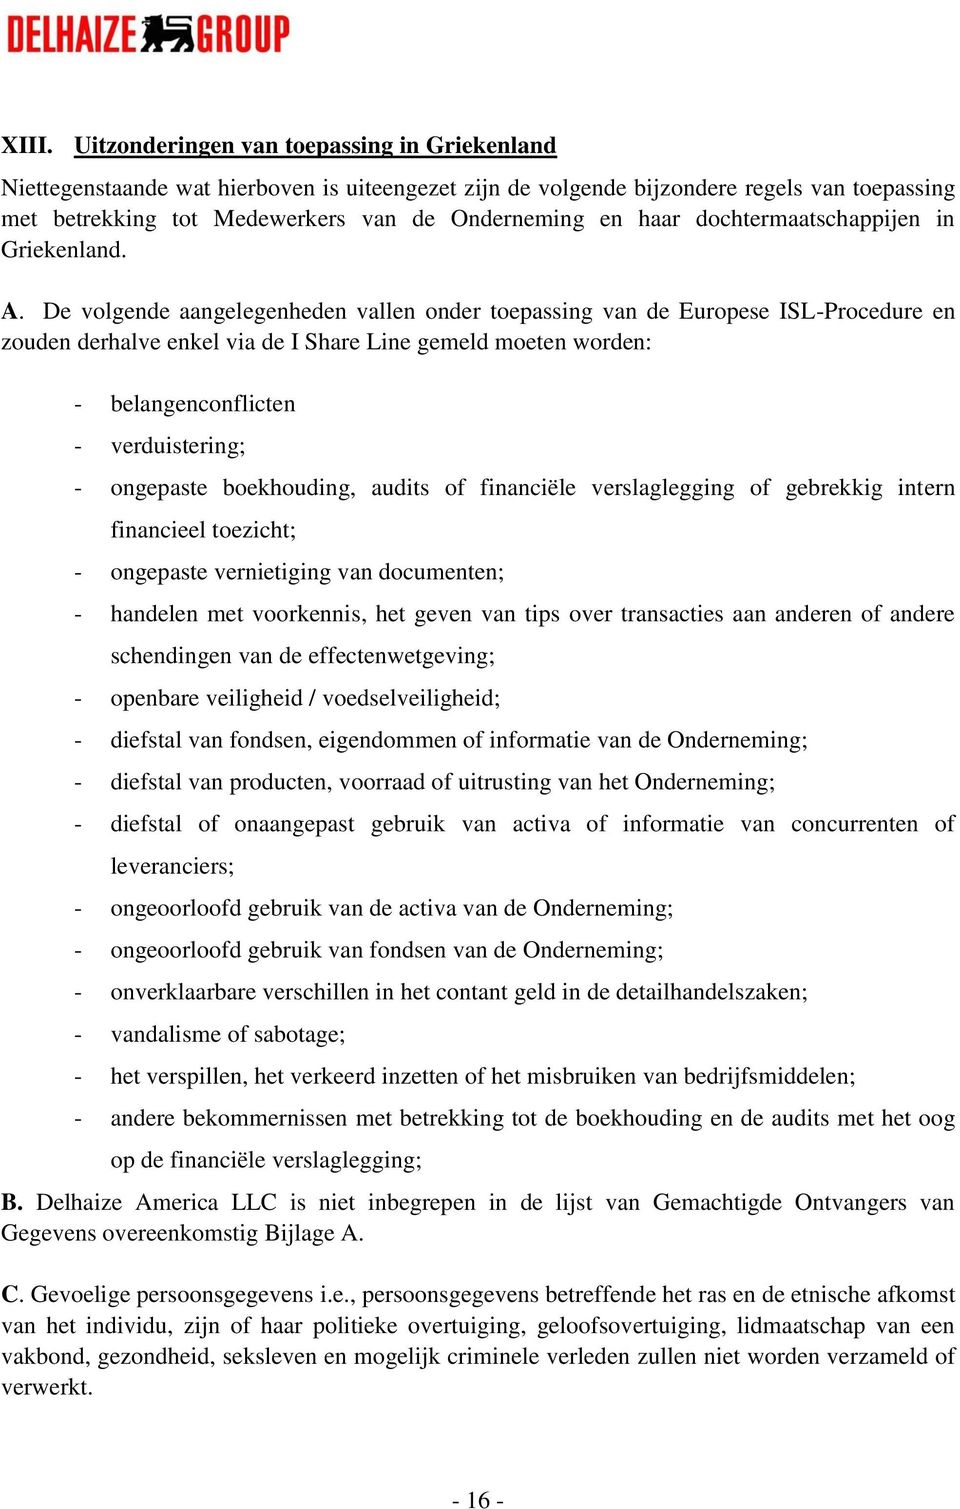 De volgende aangelegenheden vallen onder toepassing van de Europese ISL-Procedure en zouden derhalve enkel via de I Share Line gemeld moeten worden: - belangenconflicten - verduistering; - ongepaste